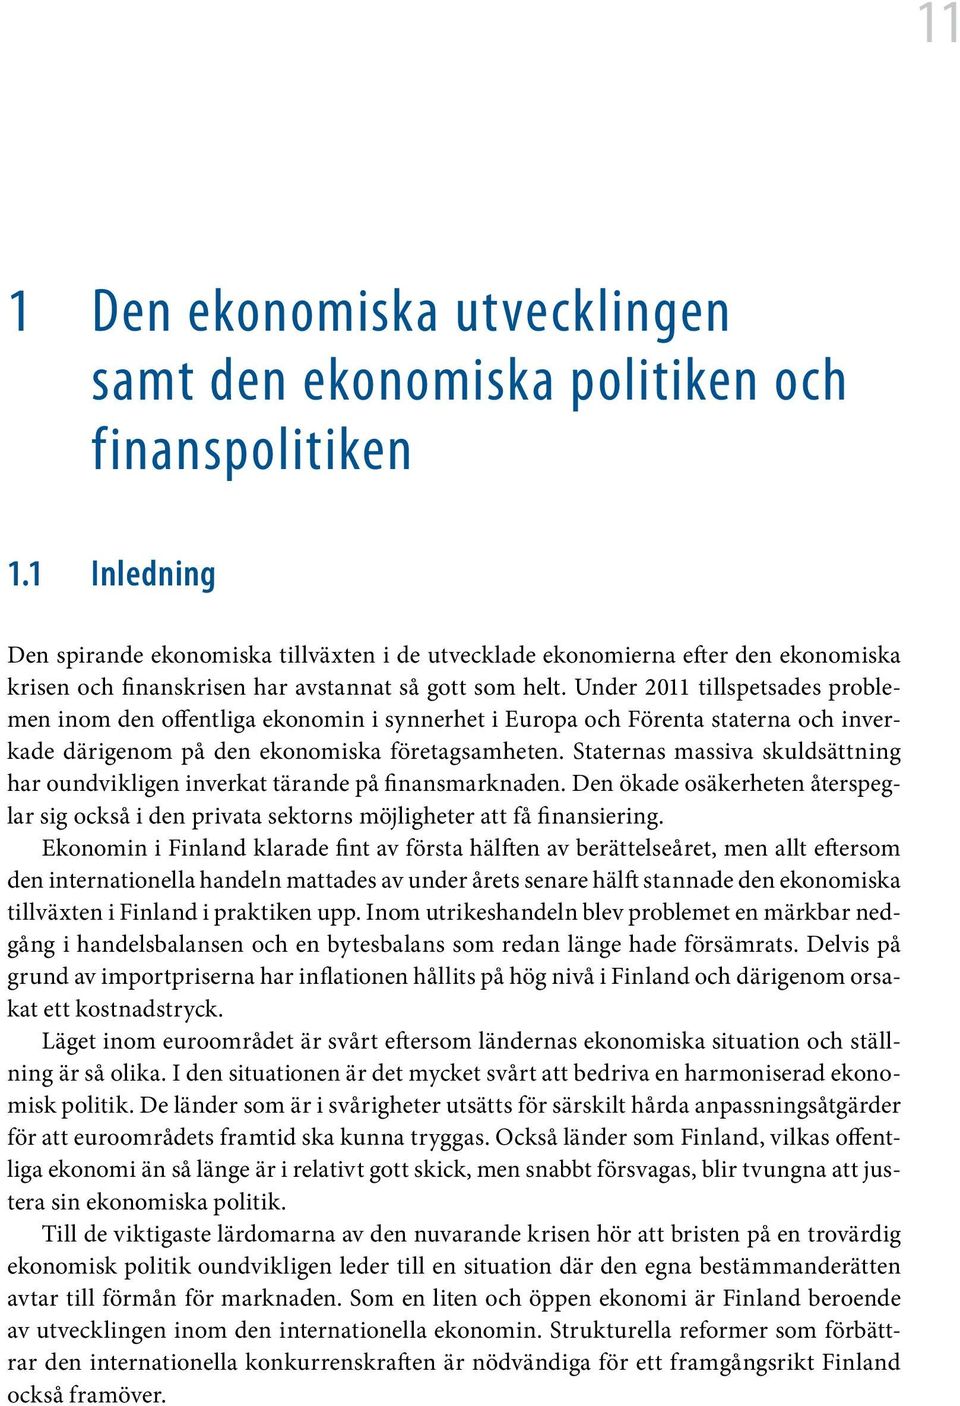 Under 2011 tillspetsades problemen inom den offentliga ekonomin i synnerhet i Europa och Förenta staterna och inverkade därigenom på den ekonomiska företagsamheten.